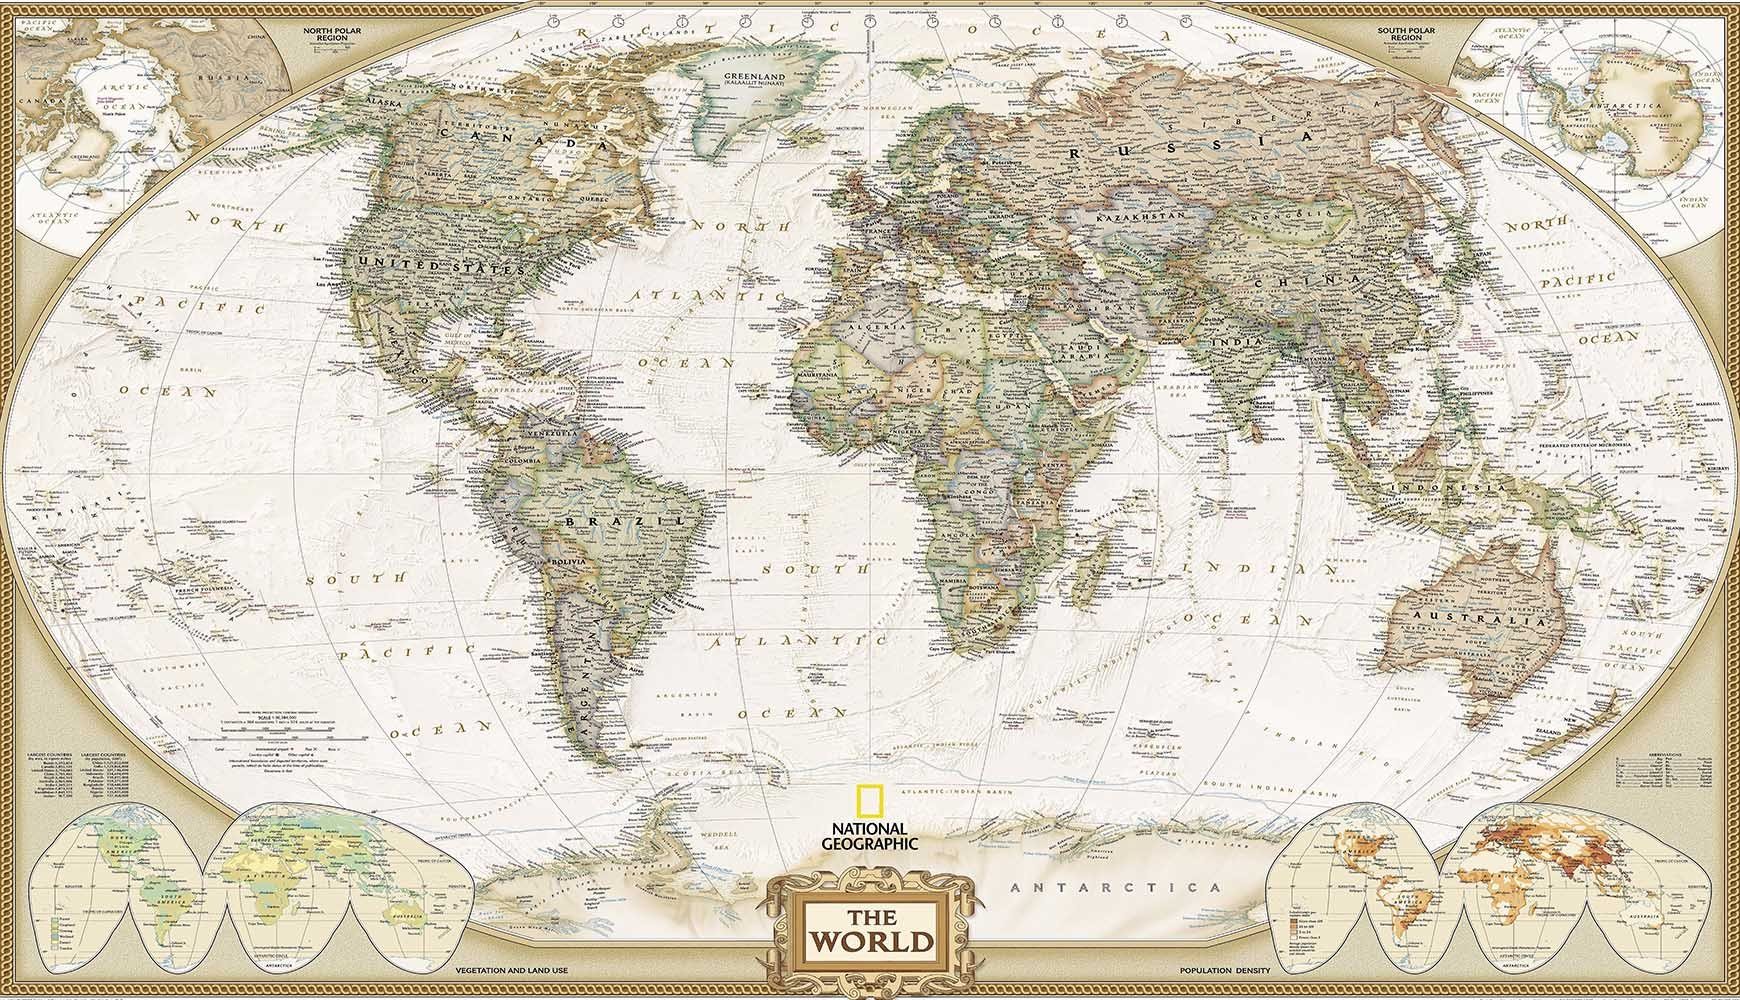 World Map 2 Wallpaper AJ Wallpaper 